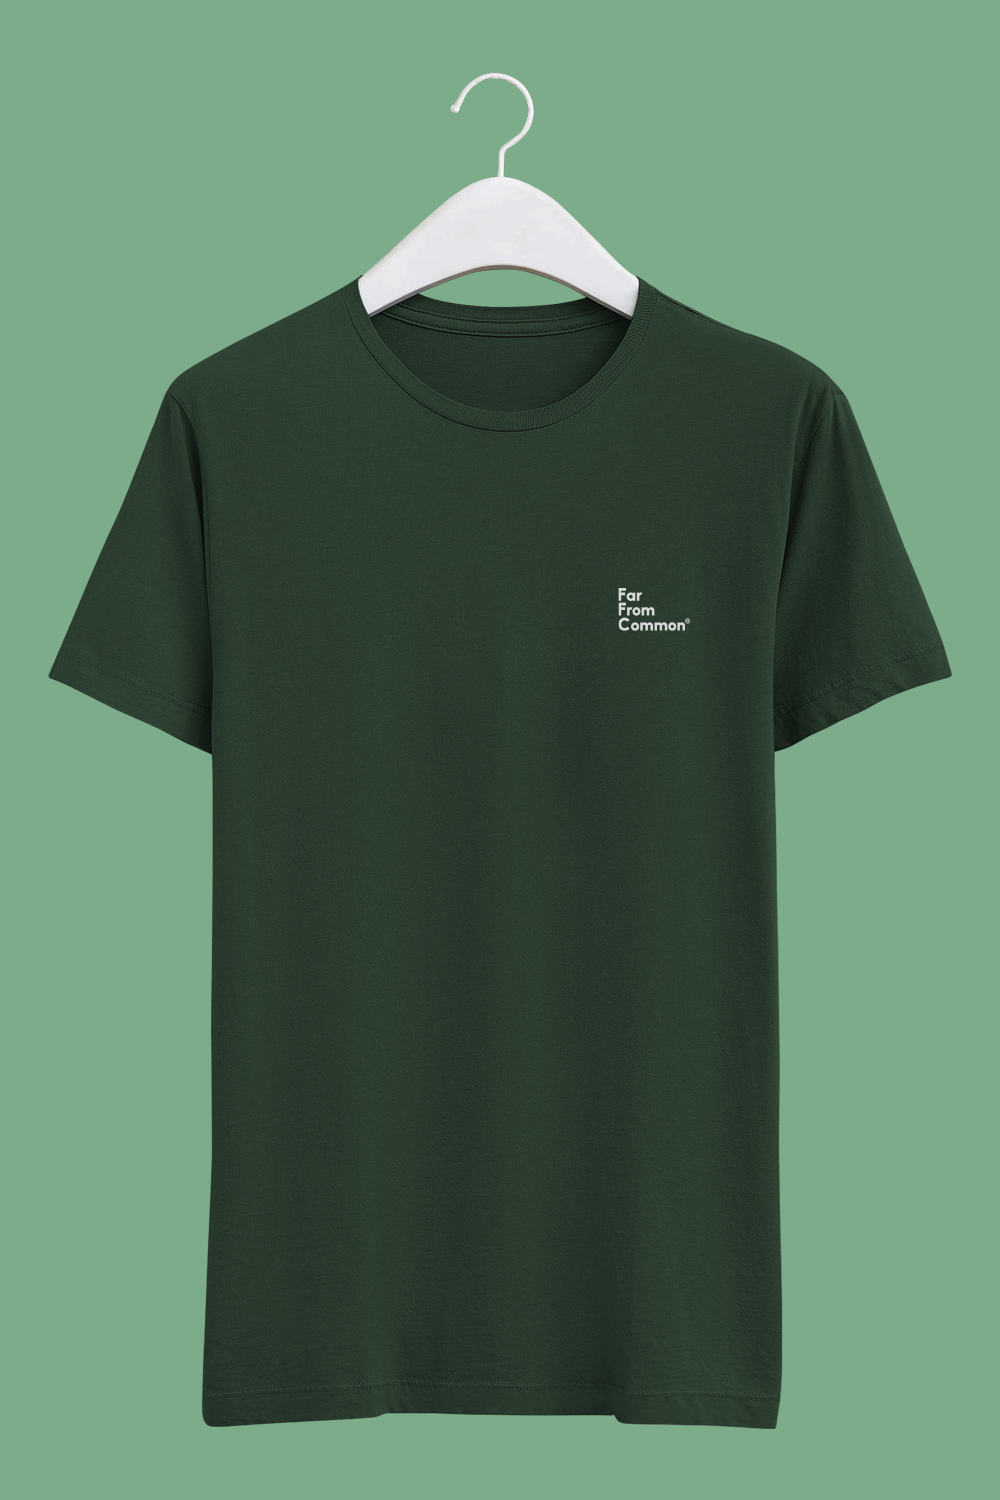 Unisex Basics T-shirt Olive Green